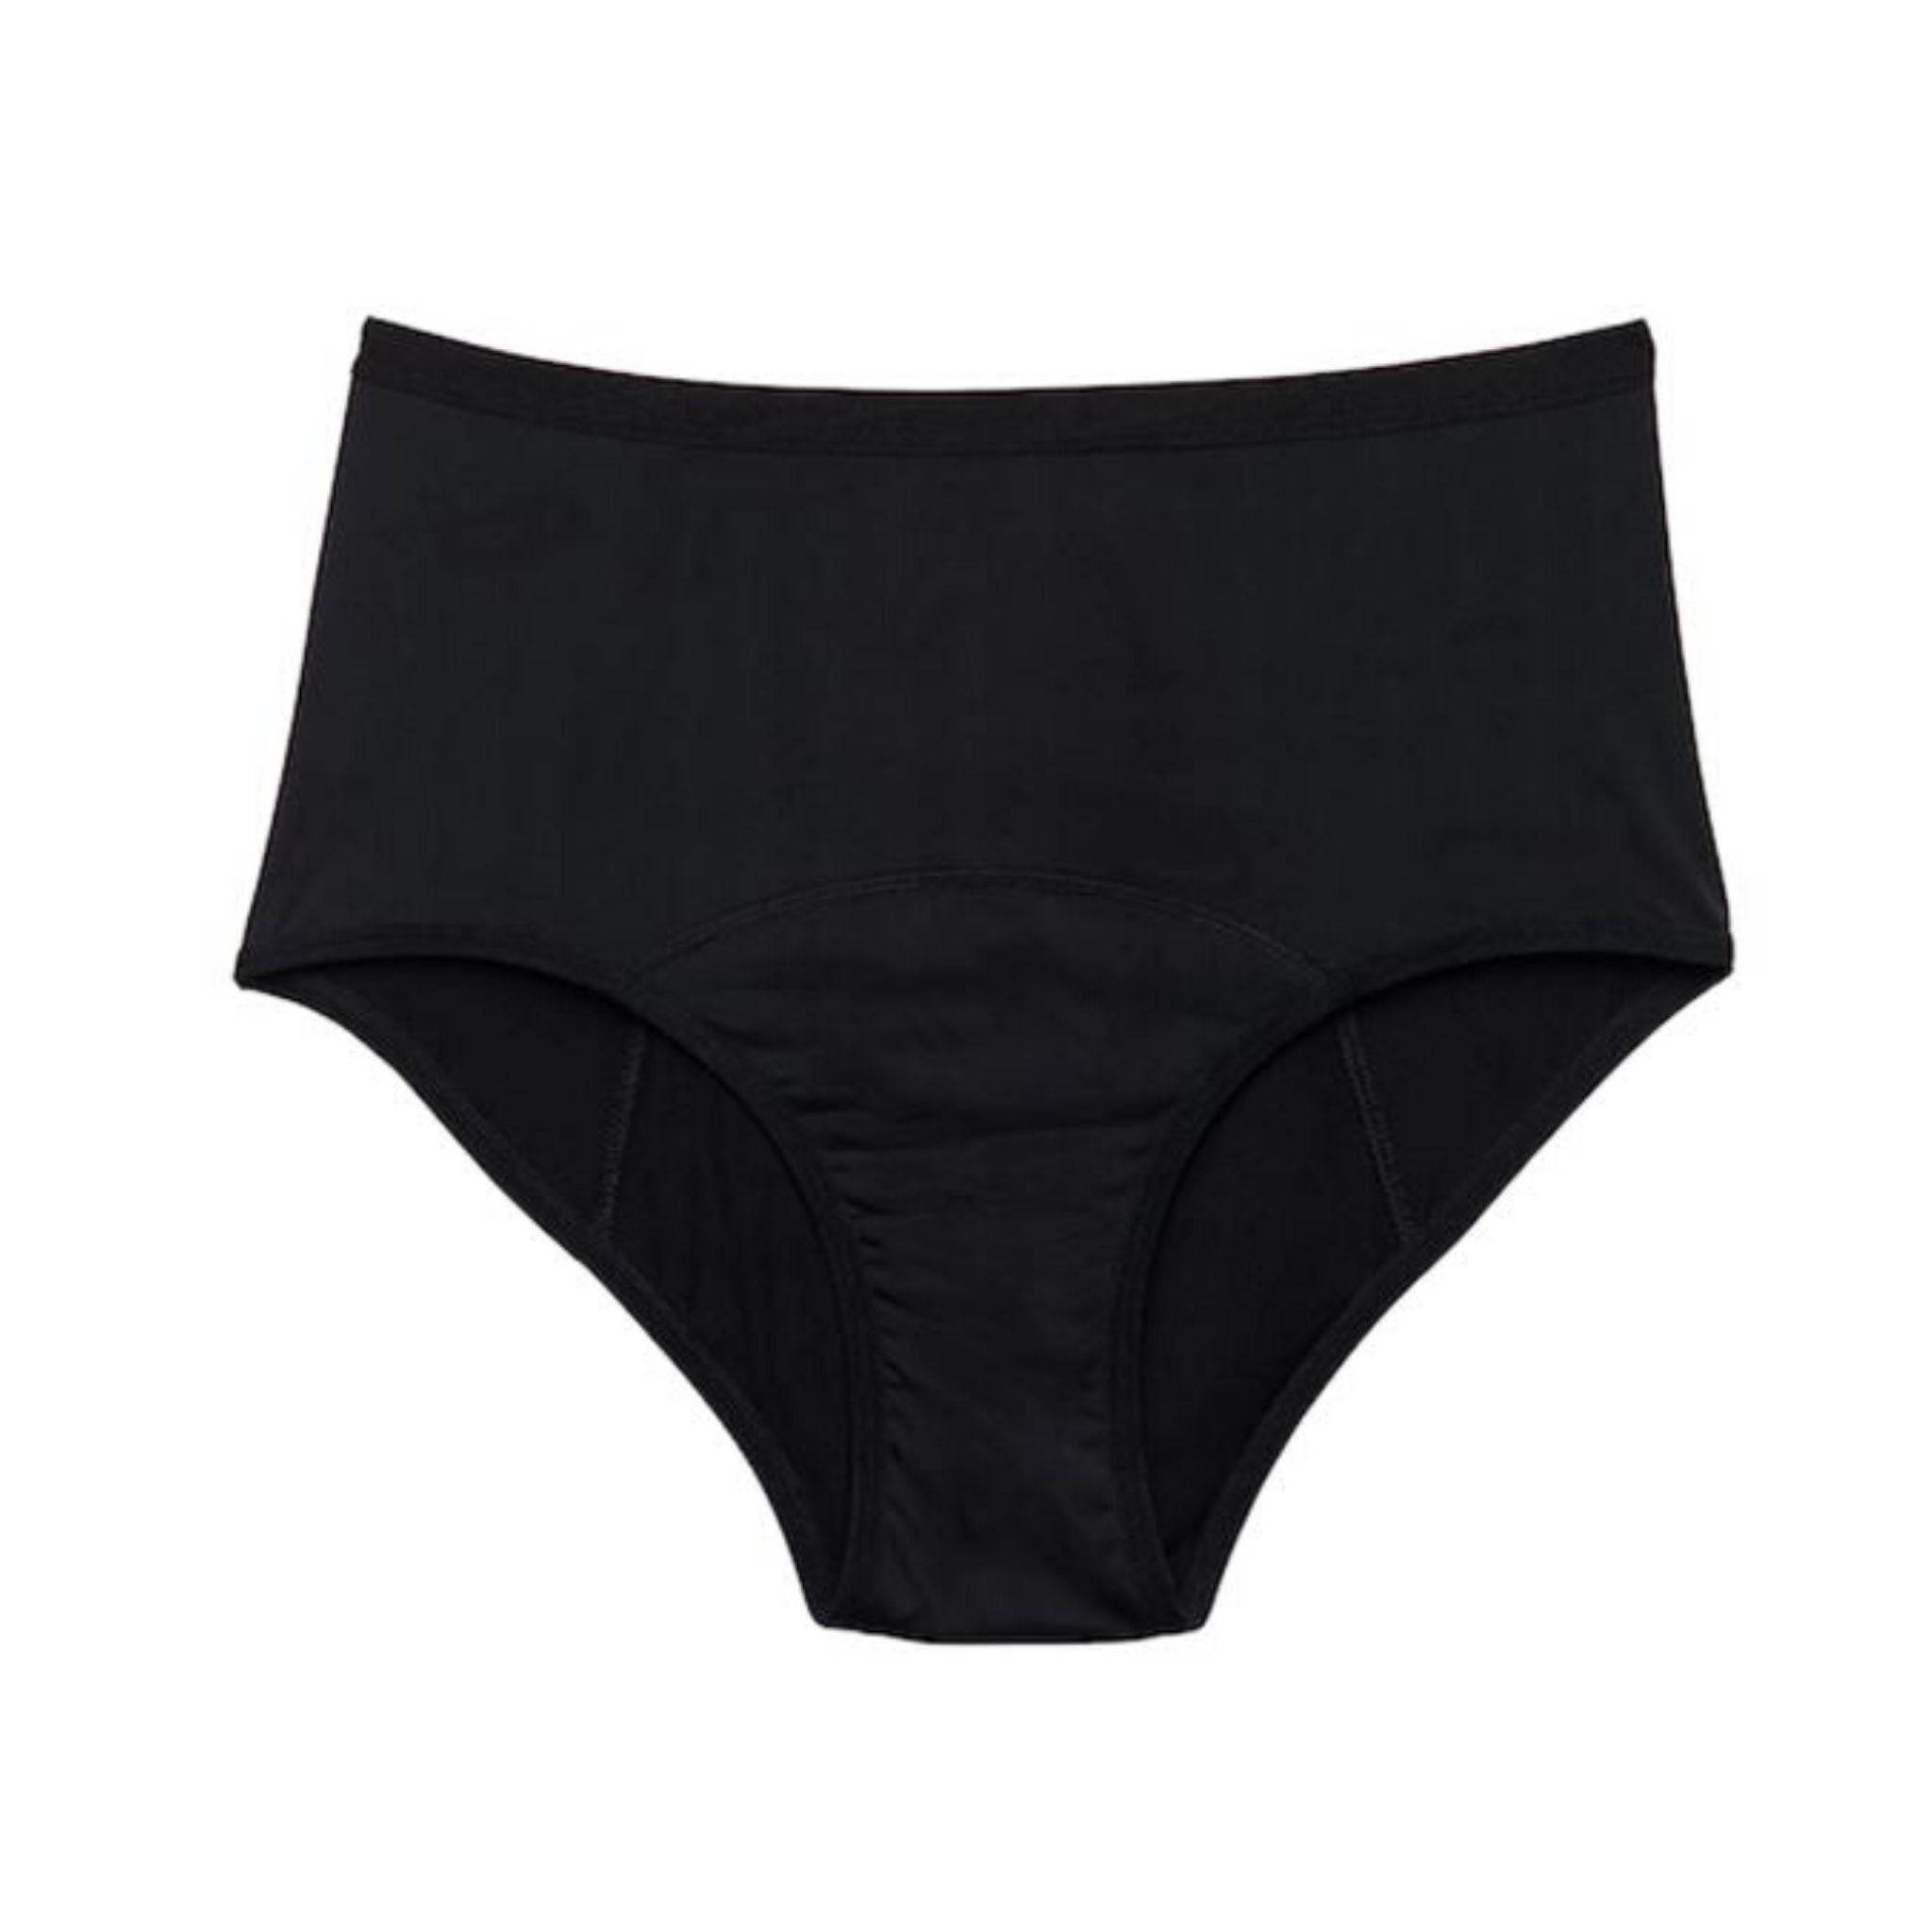 Juju - Absorbent Period Underwear - Full Brief (Light Flow) - Go For Zero